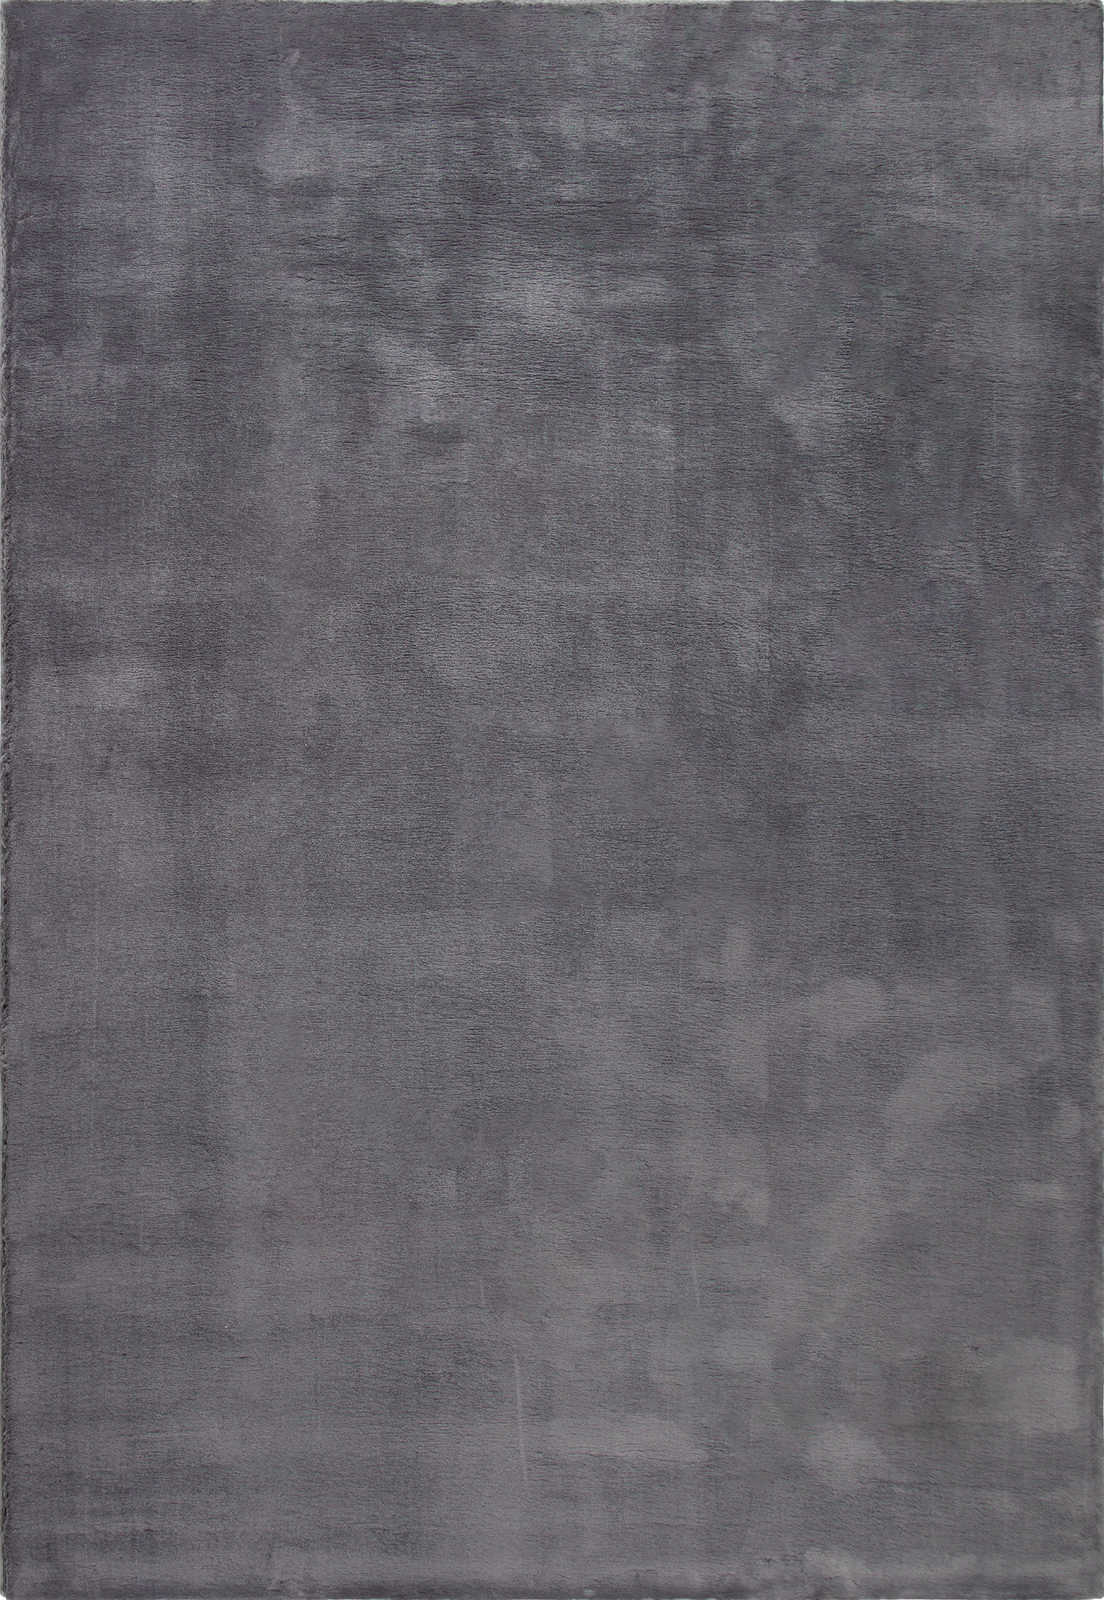             Modern hoogpolig tapijt in antraciet - 290 x 200 cm
        